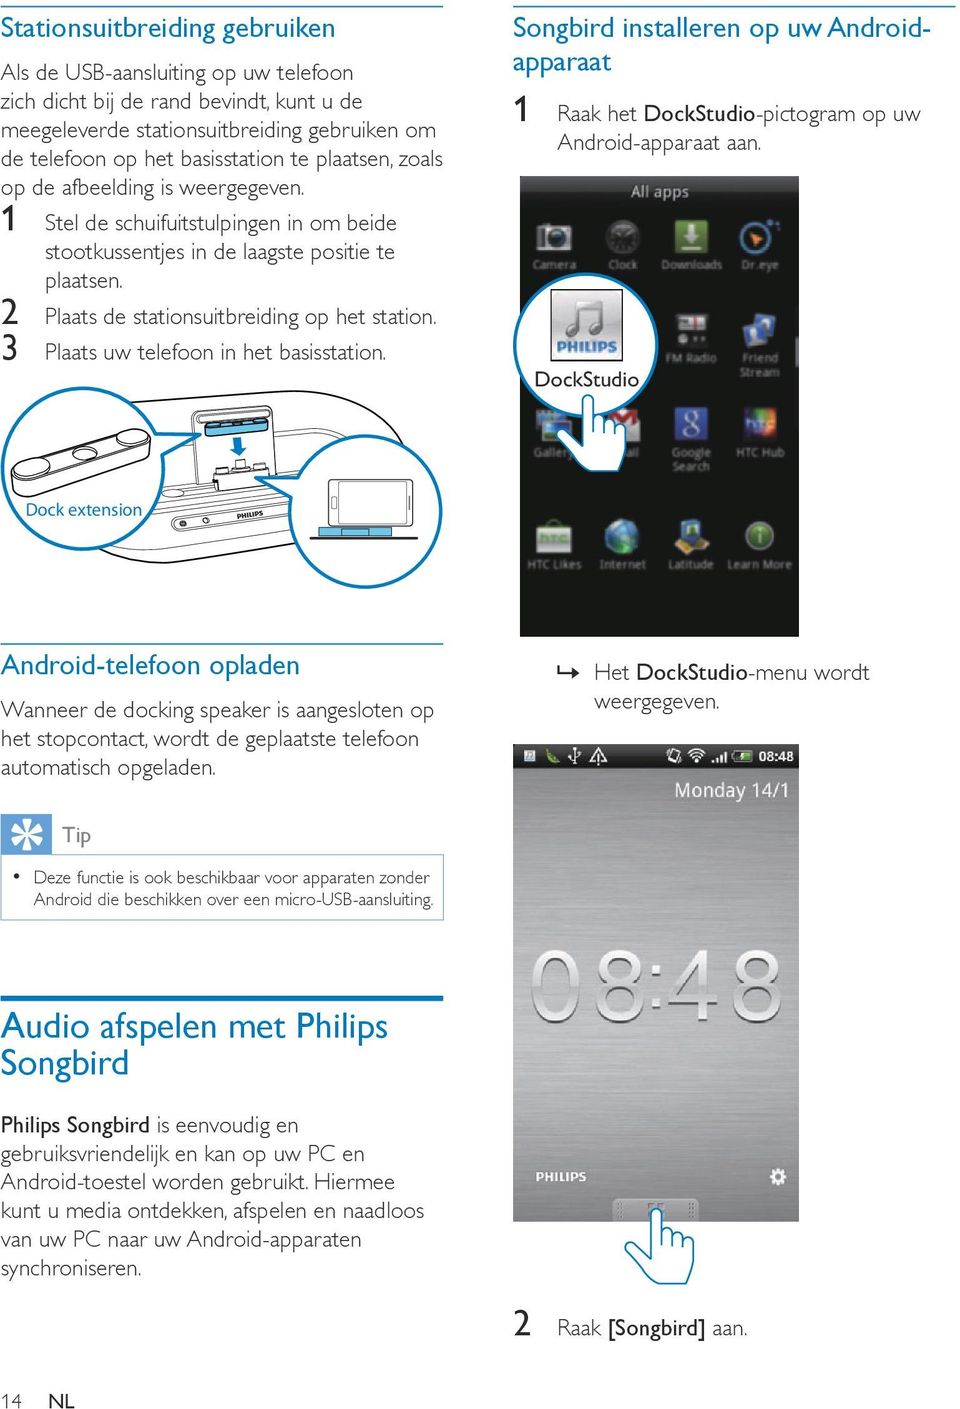 3 Plaats uw telefoon in het basisstation. Songbird installeren op uw Androidapparaat 1 Raak het DockStudio-pictogram op uw Android-apparaat aan.